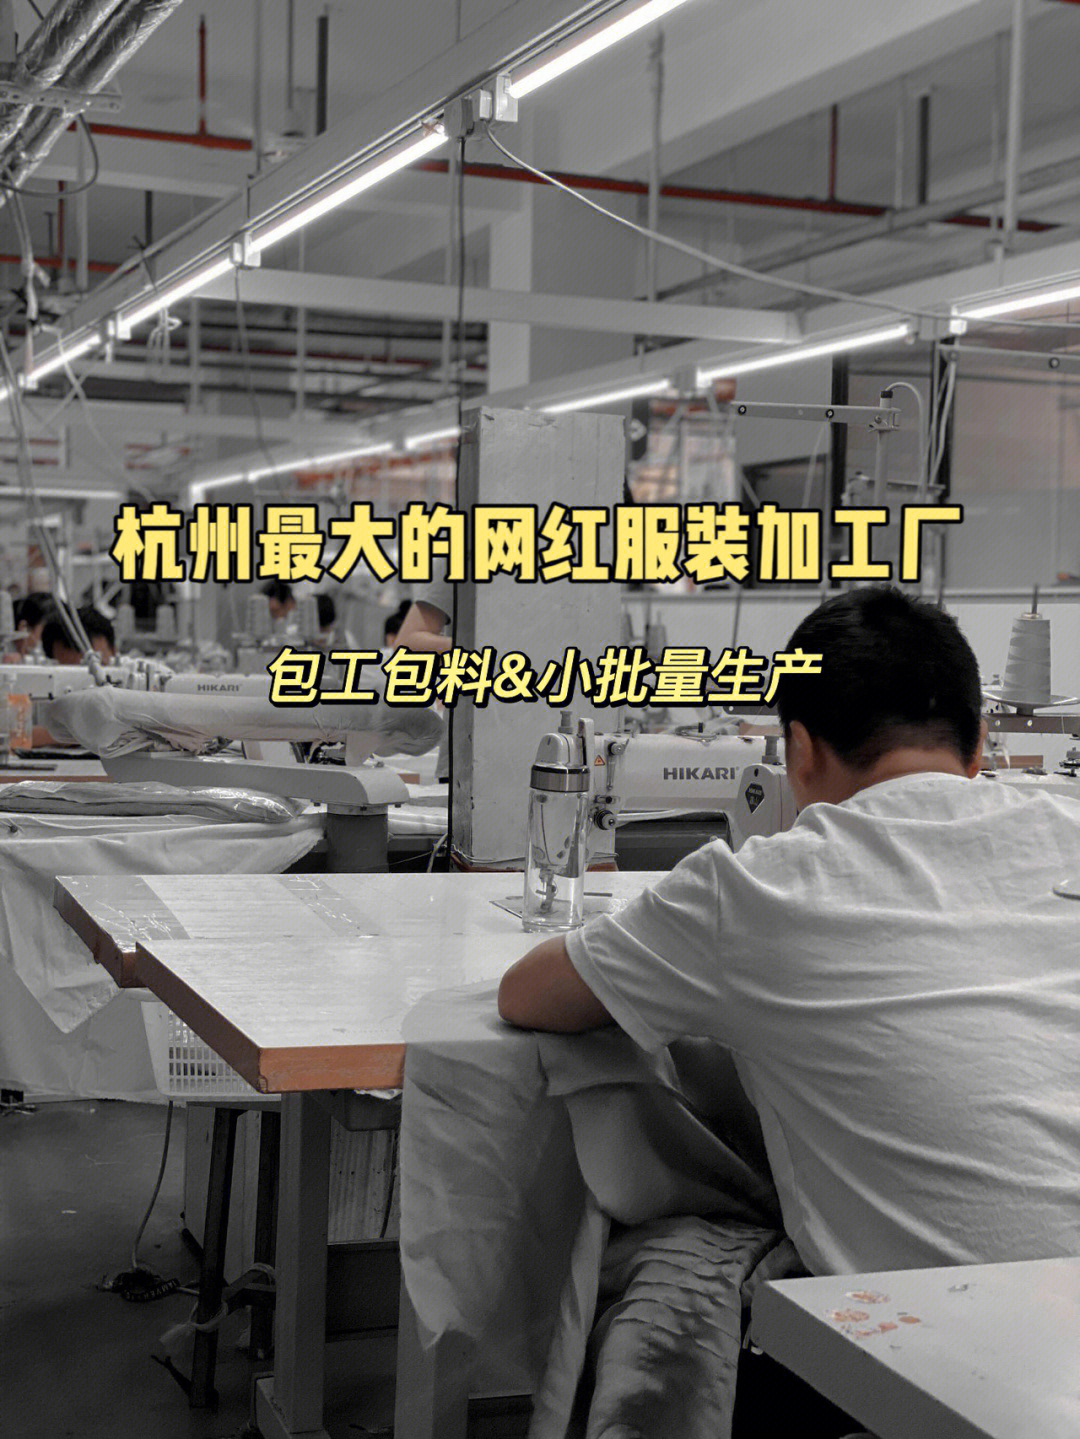 杭州最大的网红服装加工厂承接小批量订单